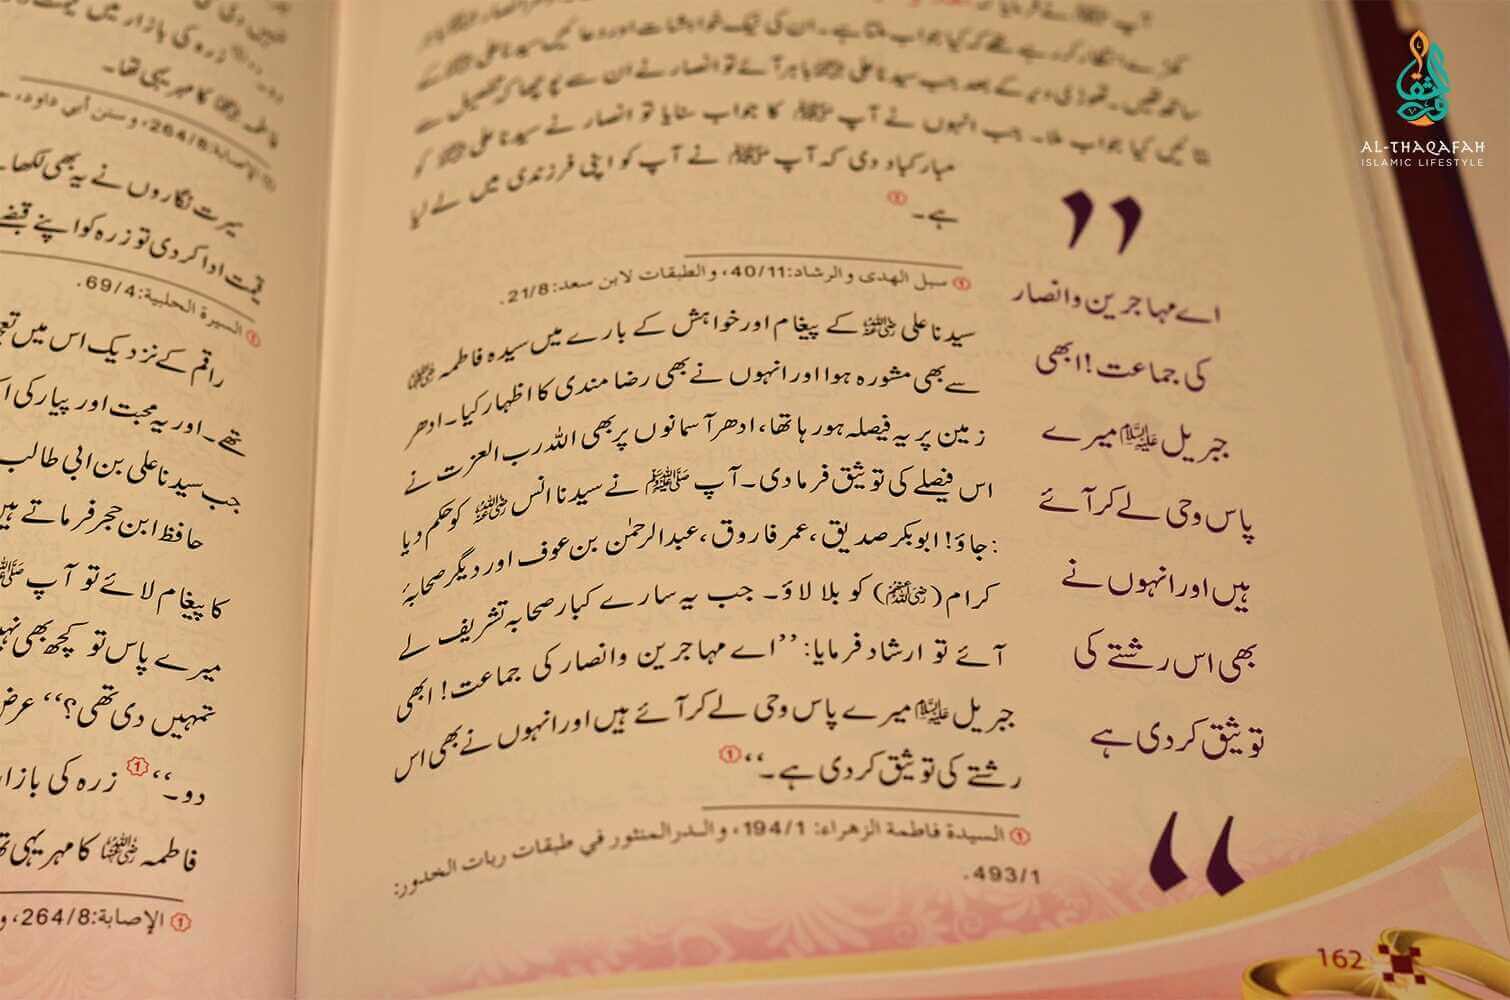 Syeda Khadija tul kubra (R.A)- Al Thaqafah Books